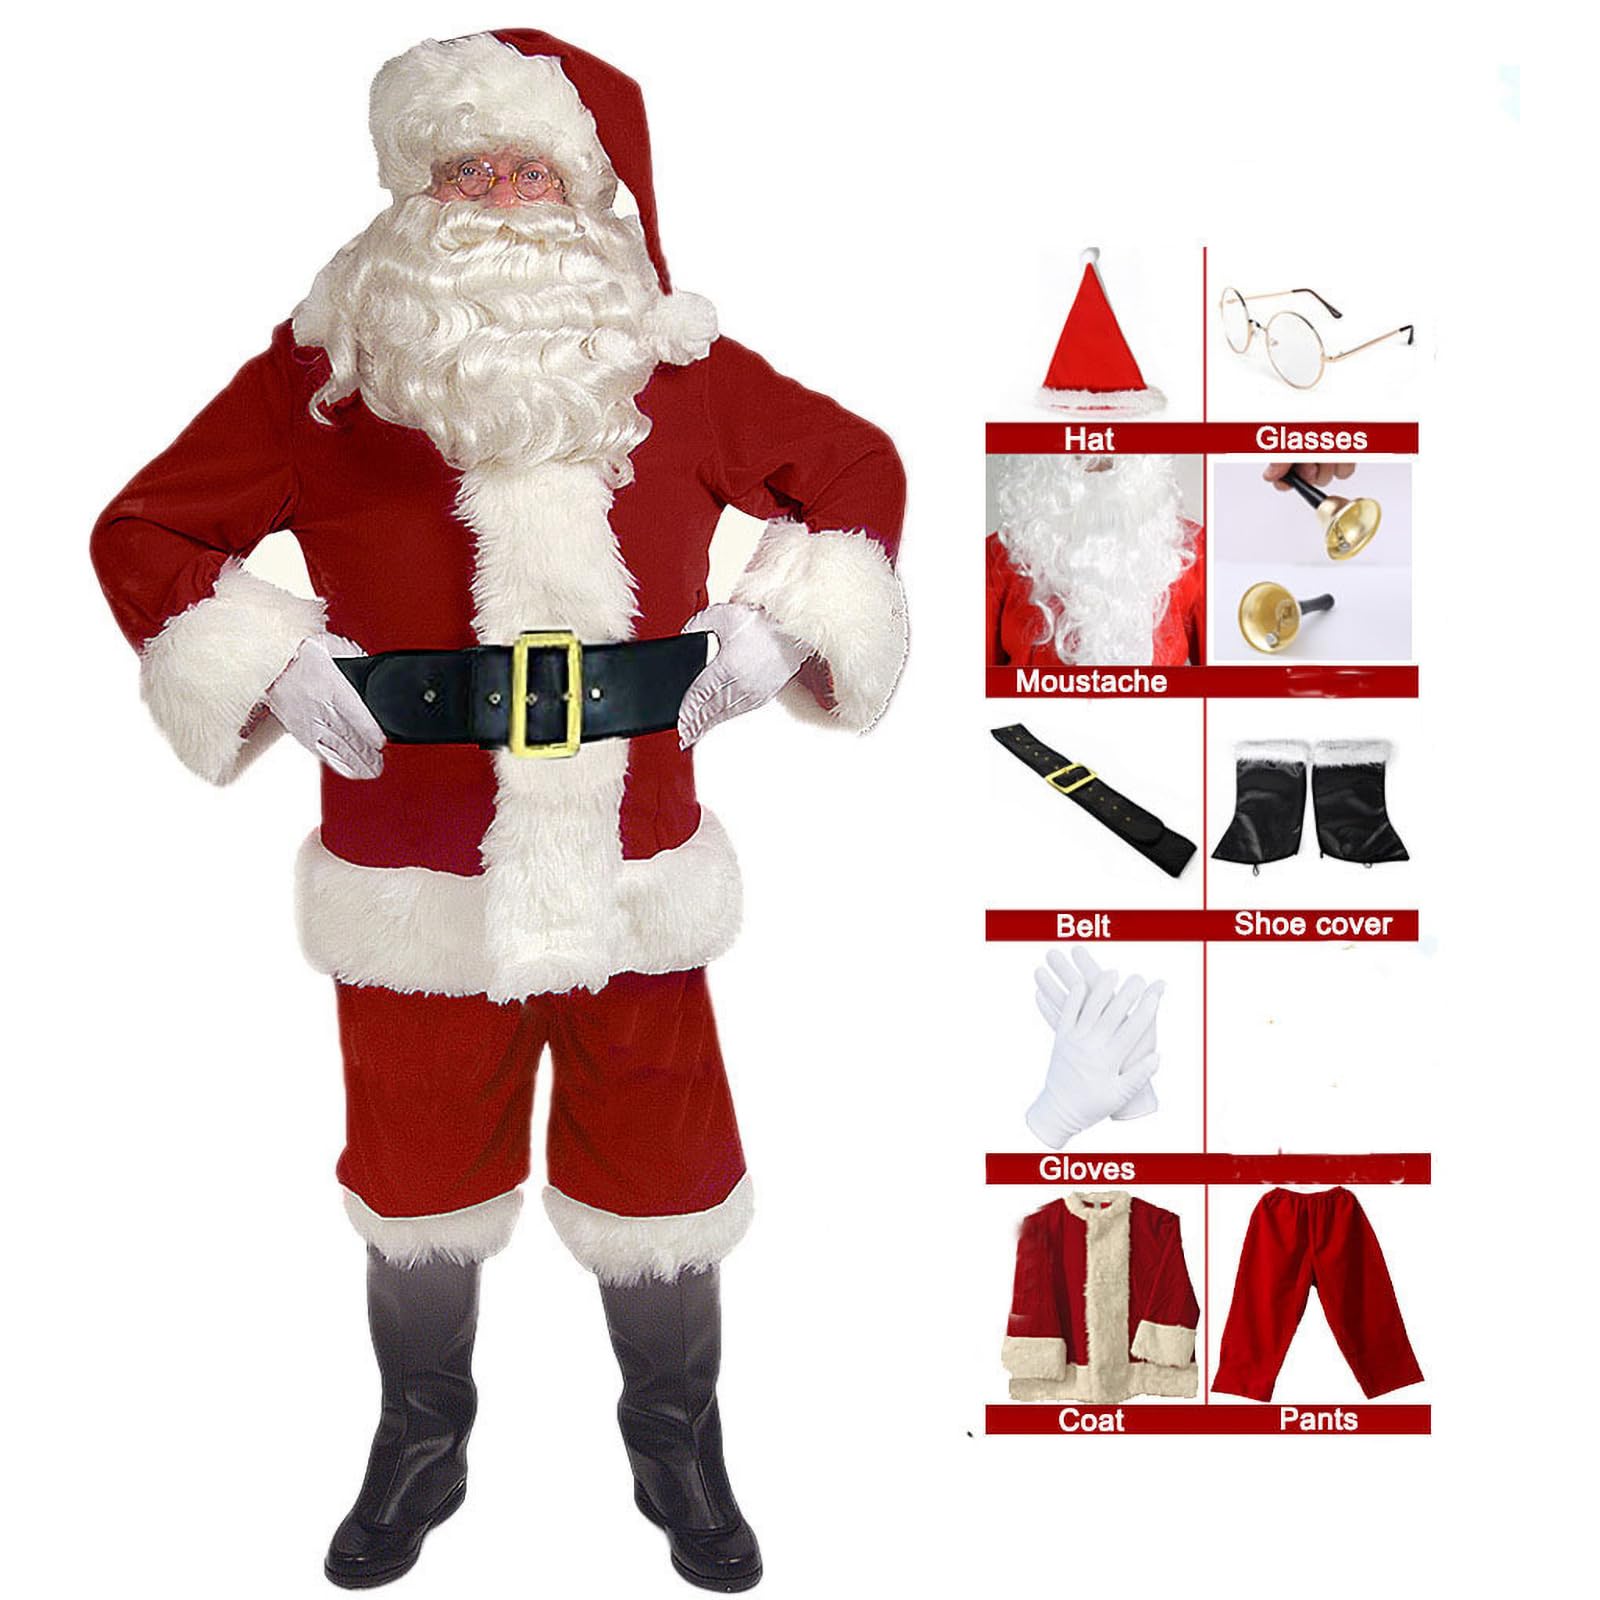 EXQUILEG Weihnachtsmann Kostüm für Herren, Weihnachtsmannkostüm mit Mütze Bart Gürtel und Handschuhe - Weihnachtskostüm Nikolauskostüm Weihnachtskostüme Kostüme (9-Teiliges,XL)